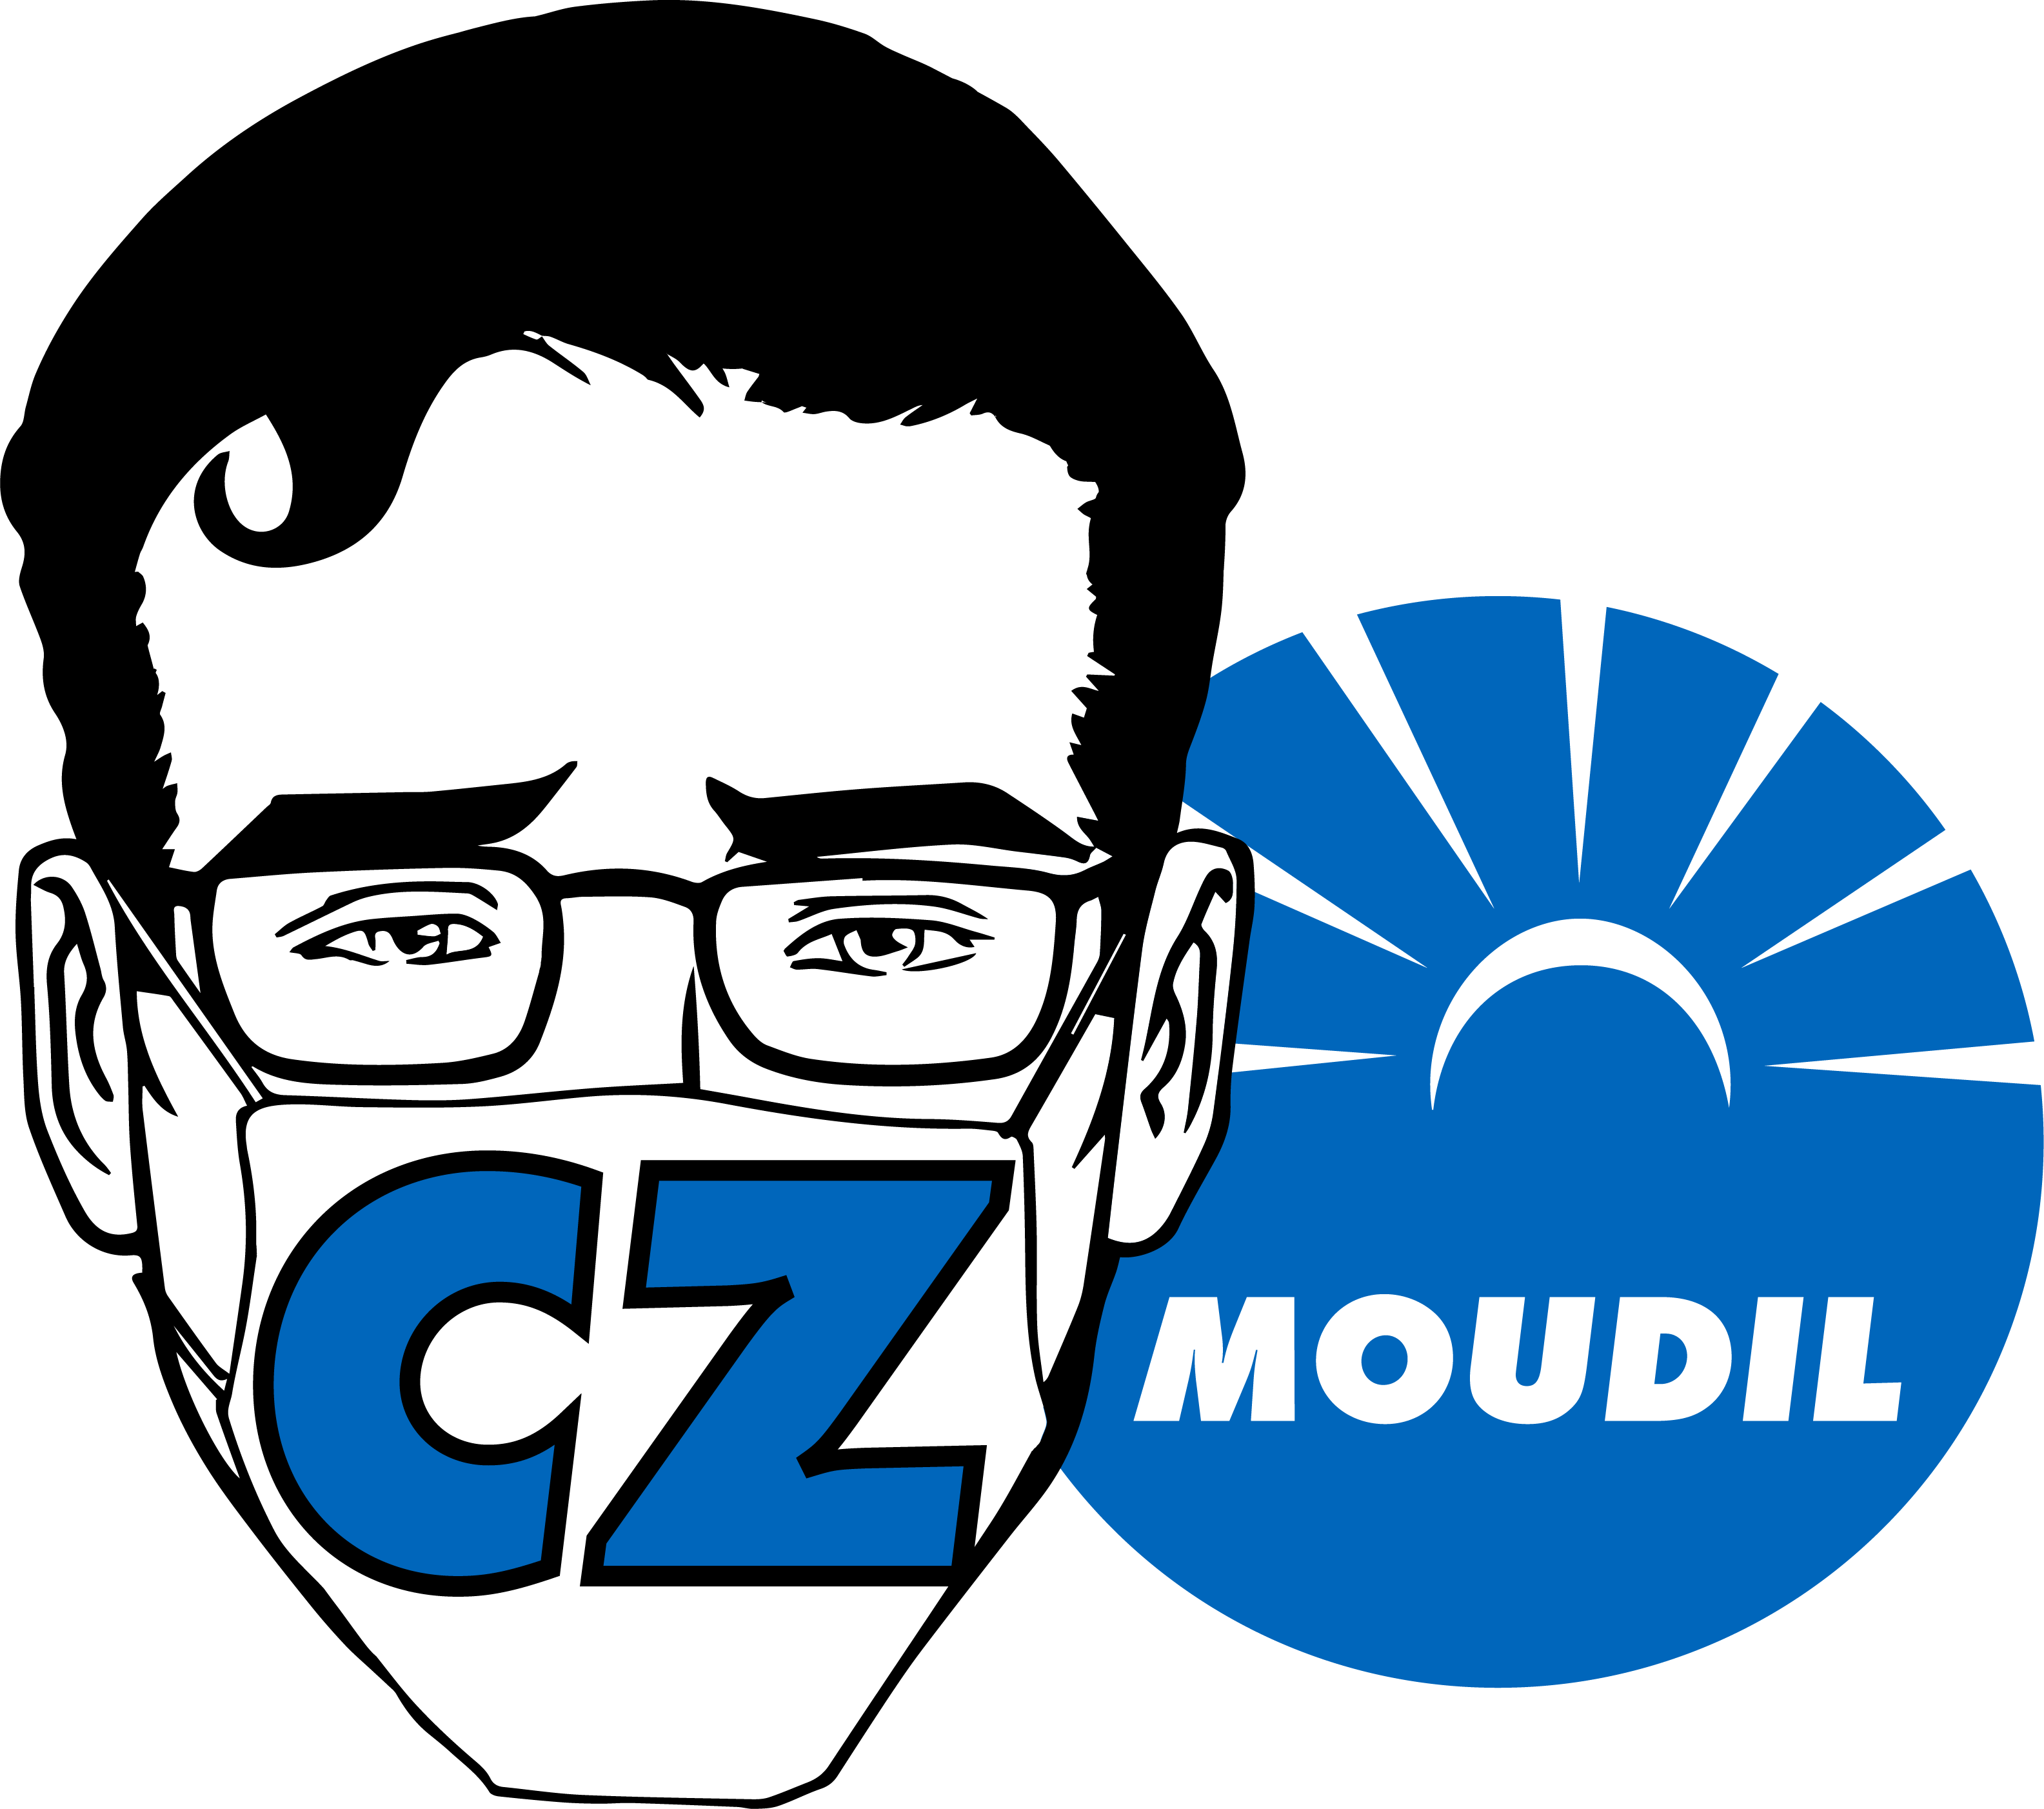 czmoudil_logo.png